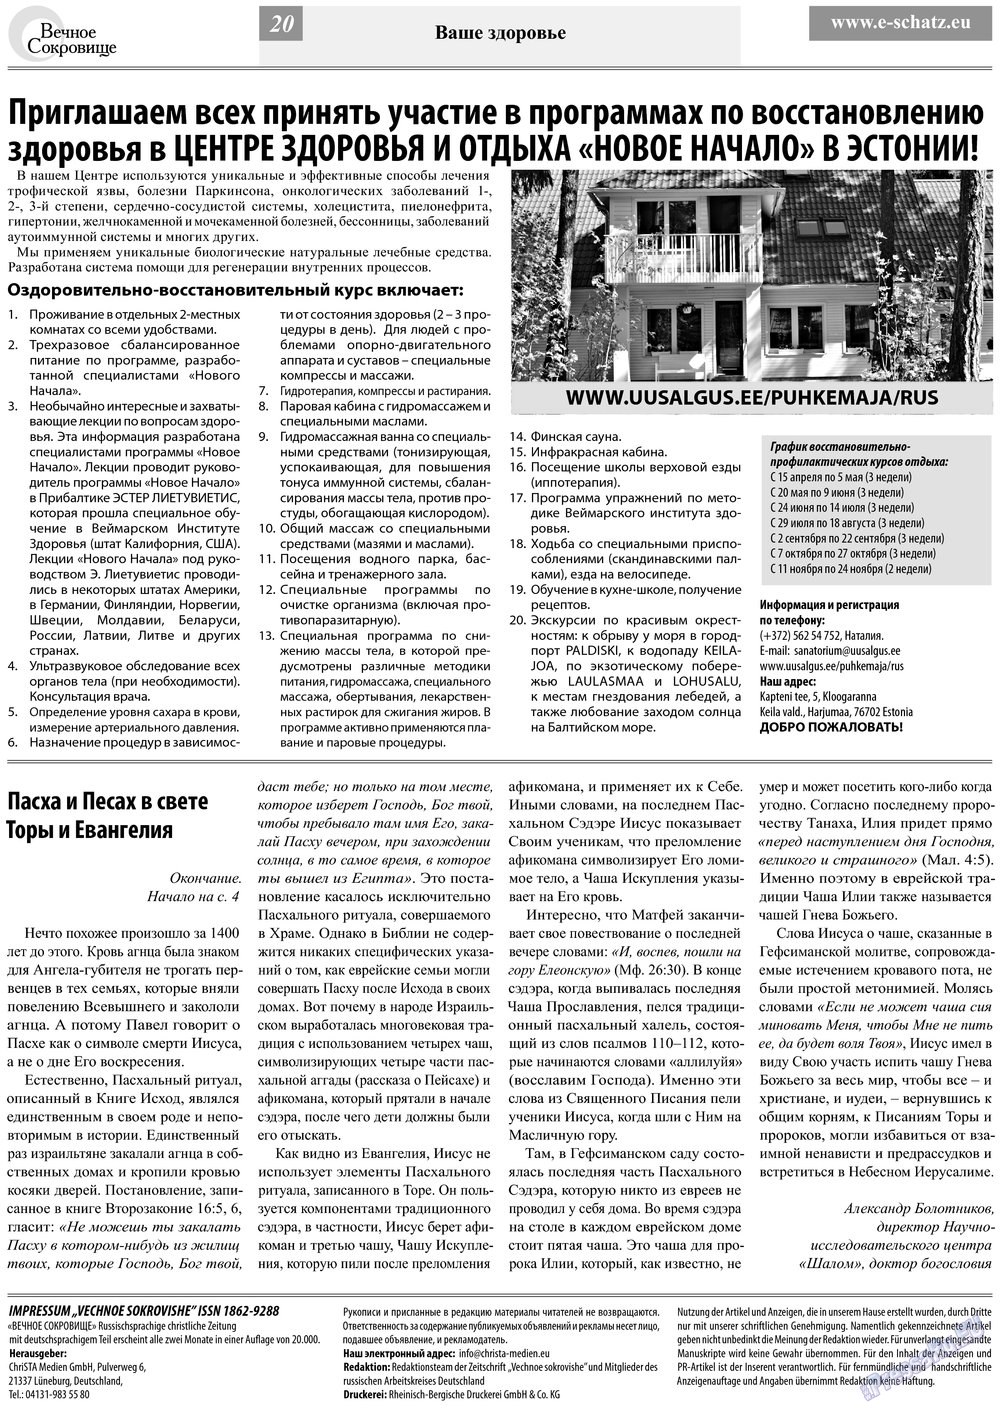 Вечное сокровище (газета). 2013 год, номер 3, стр. 20